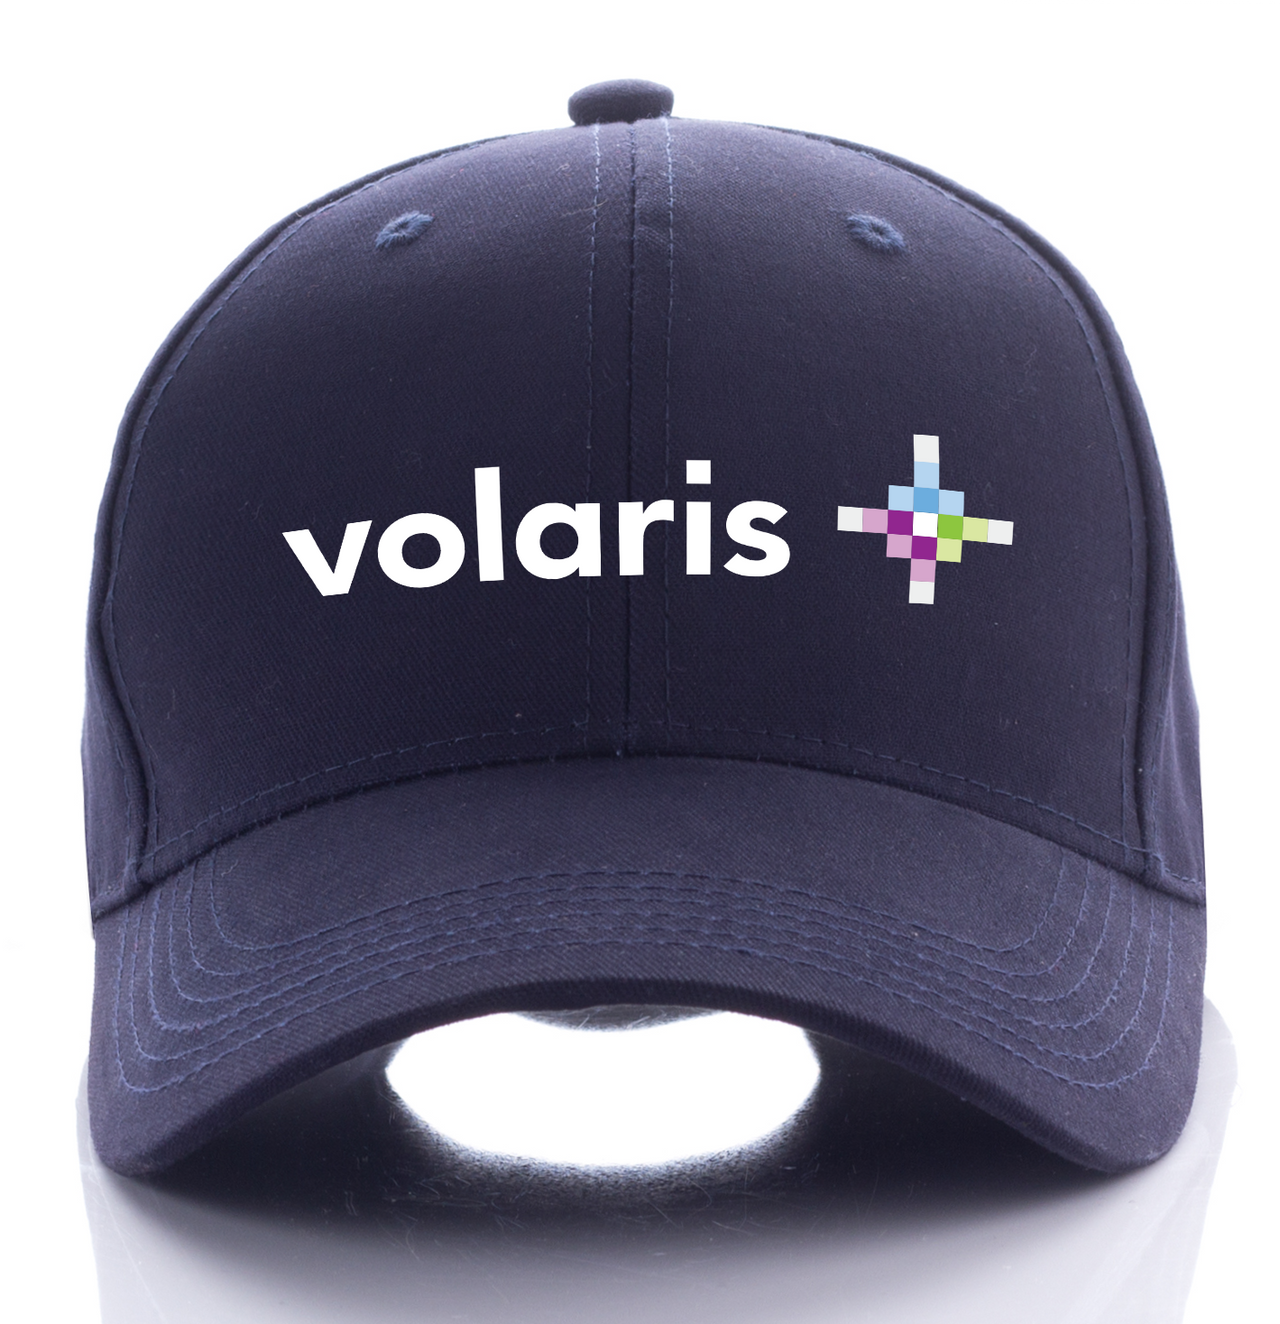 VOLARIS AIRLINE DESIGNED CAP